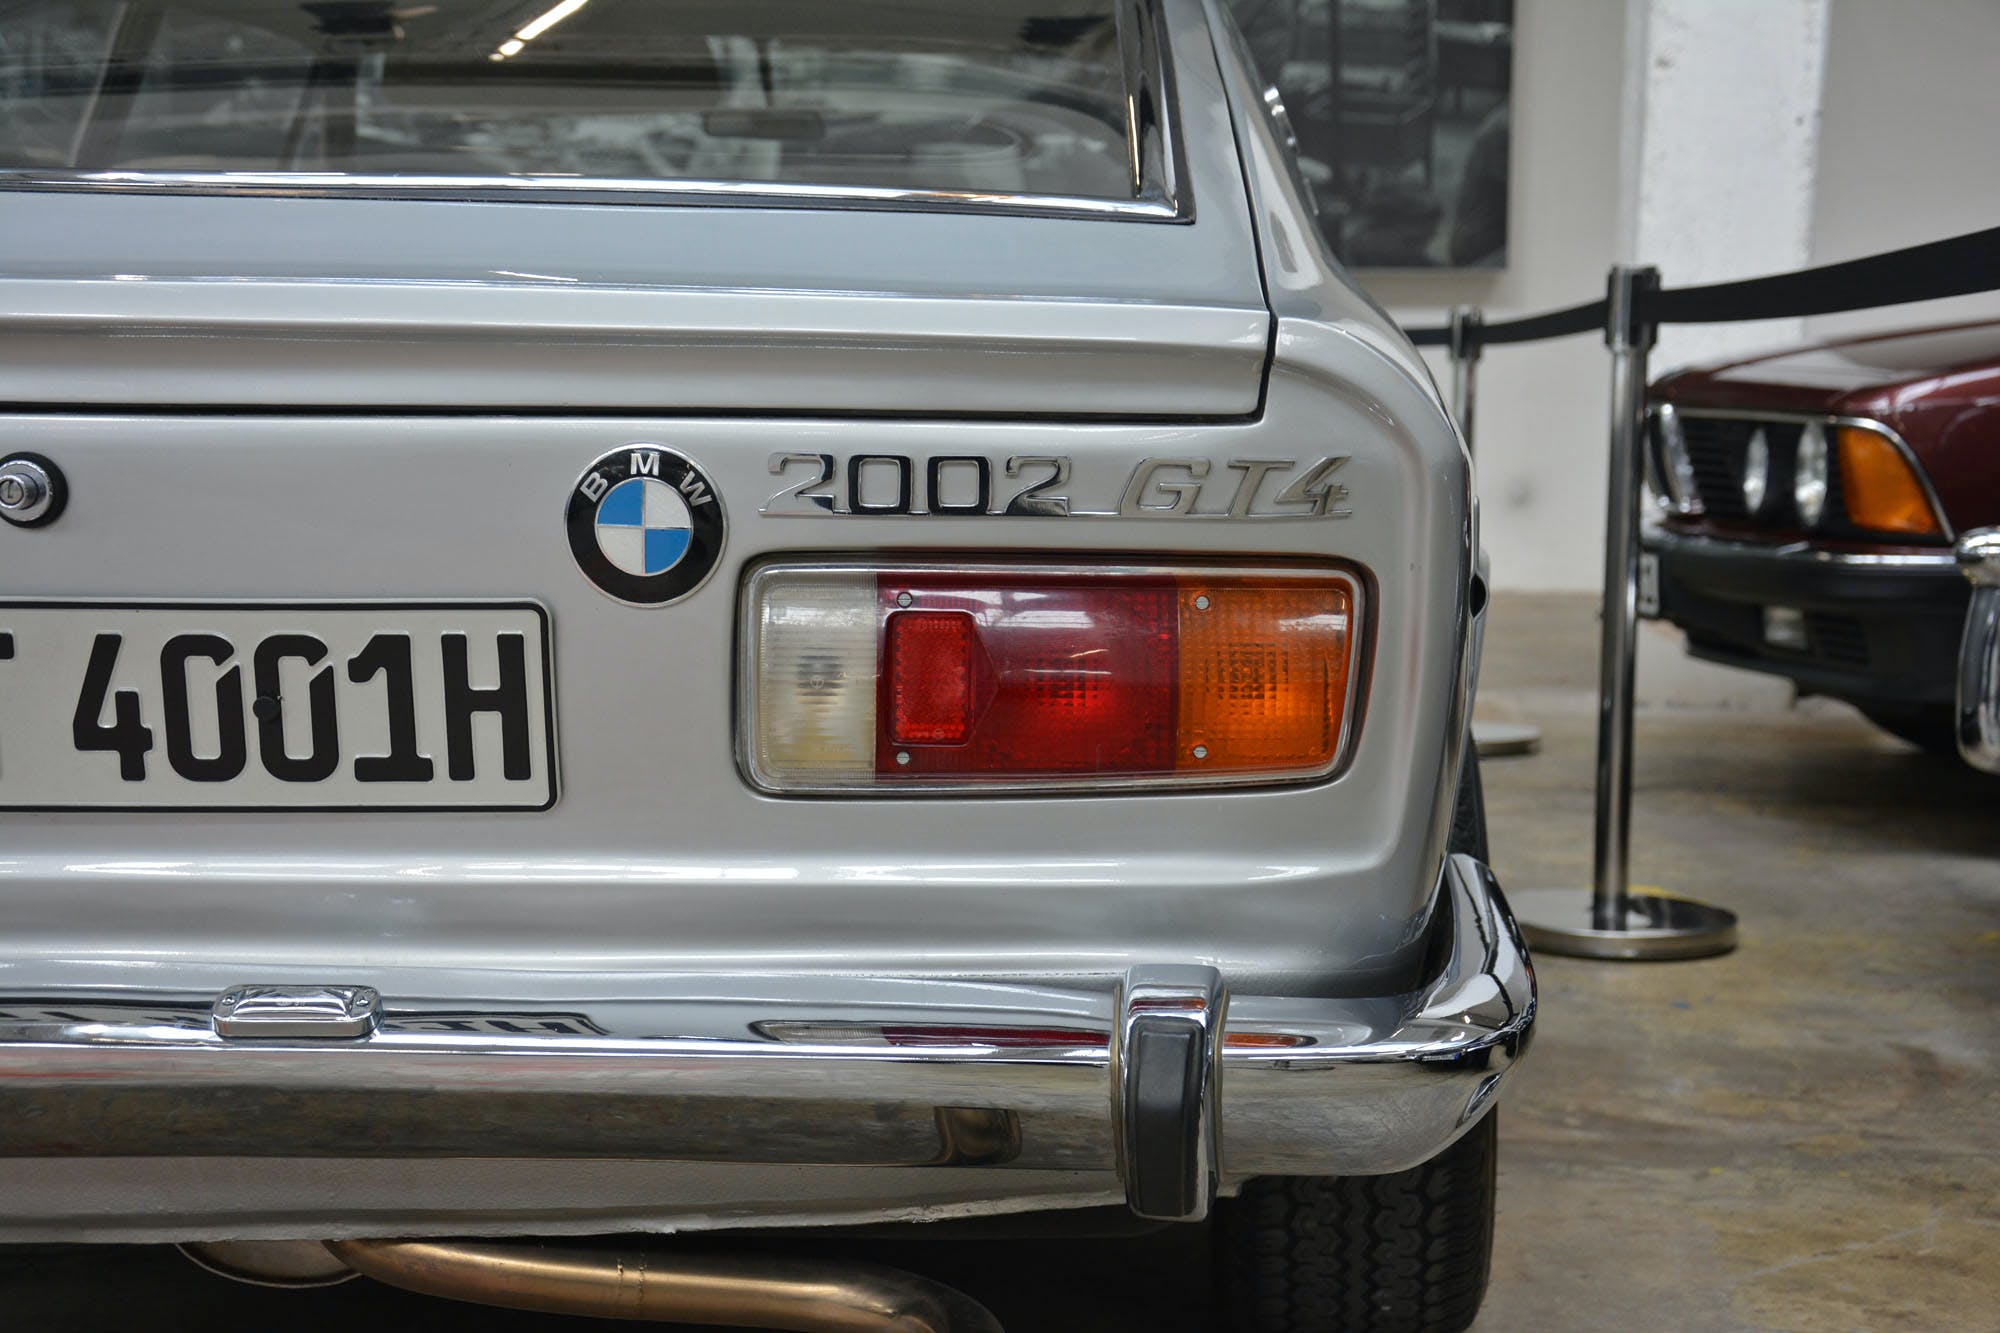 1966 BMW 2002 GT4 Frua